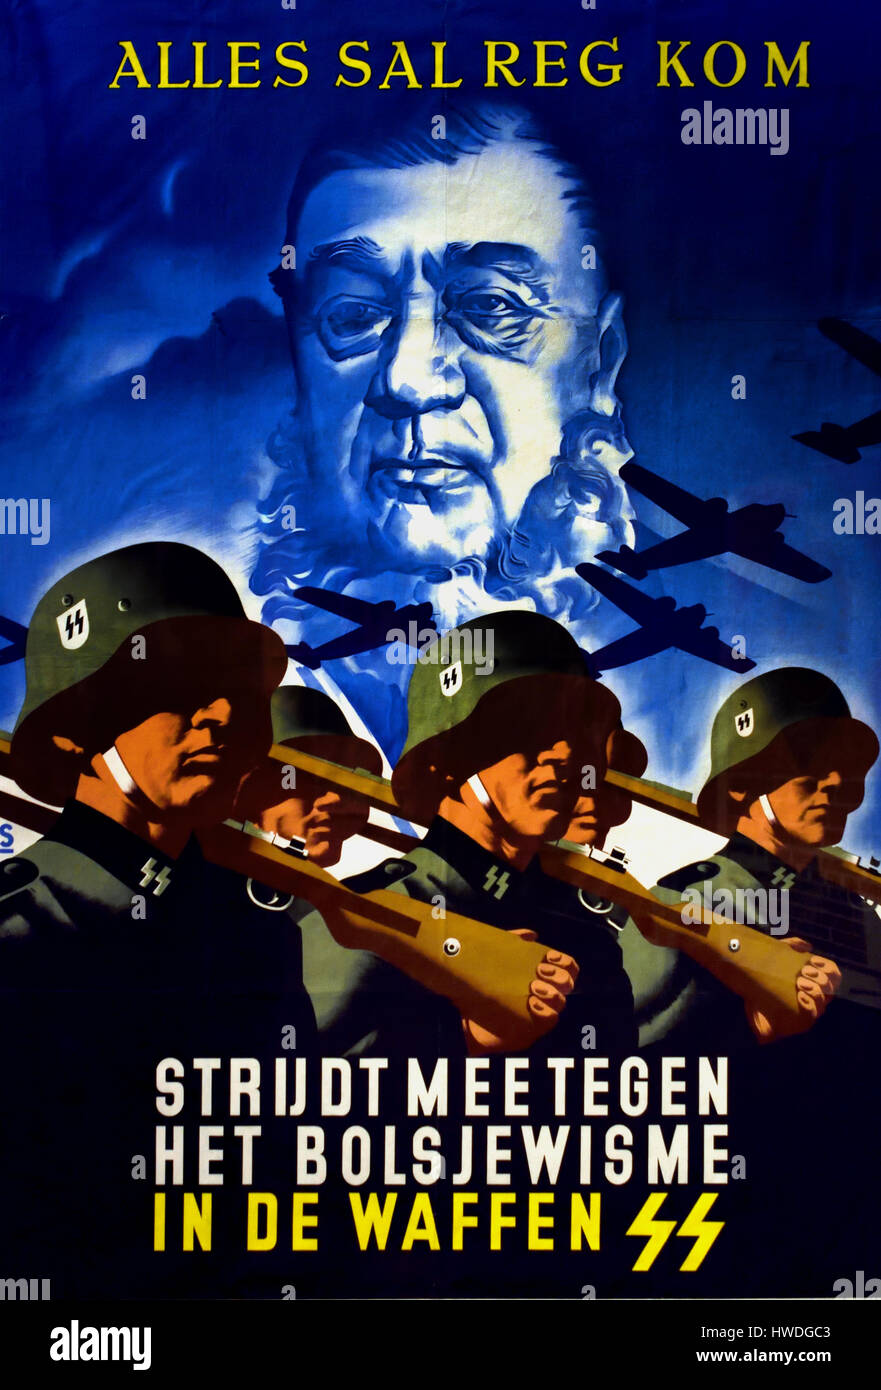 Affiche de recrutement pour la Waffen SS 1942 ( discrimination - racisme Afrique Afrique du Sud ) Banque D'Images